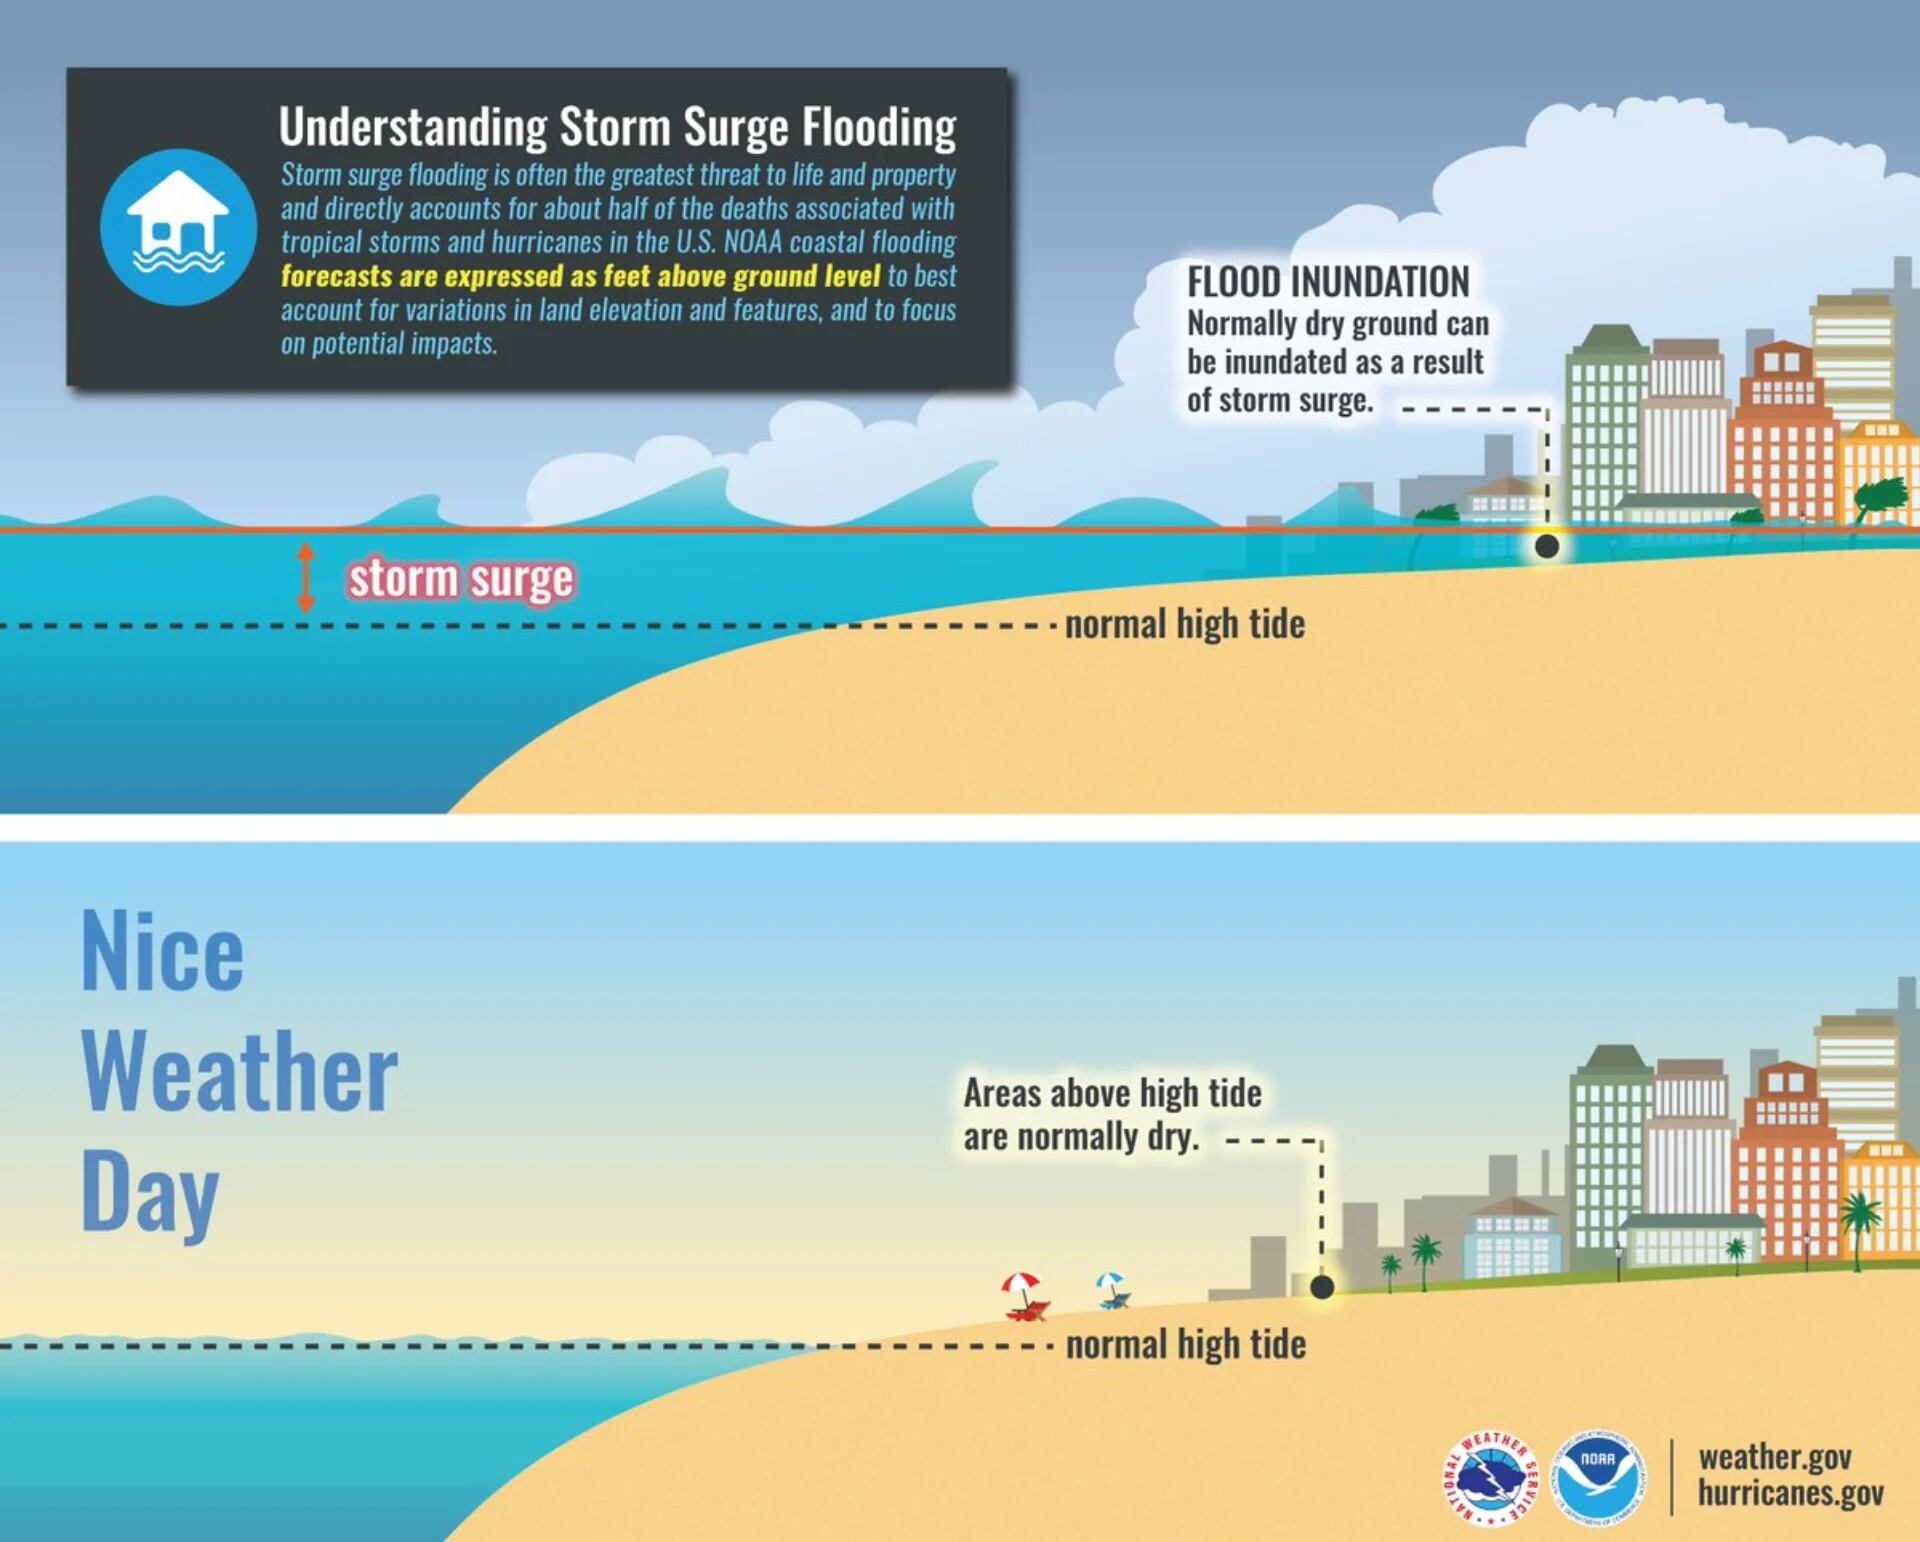 El servicio metereológico estadounidense anunció que, debido a Dorian, podrían ocurrir inundaciones repentinas por la subida del mar incluso antes de los fuertes vientos (Foto: NWS)